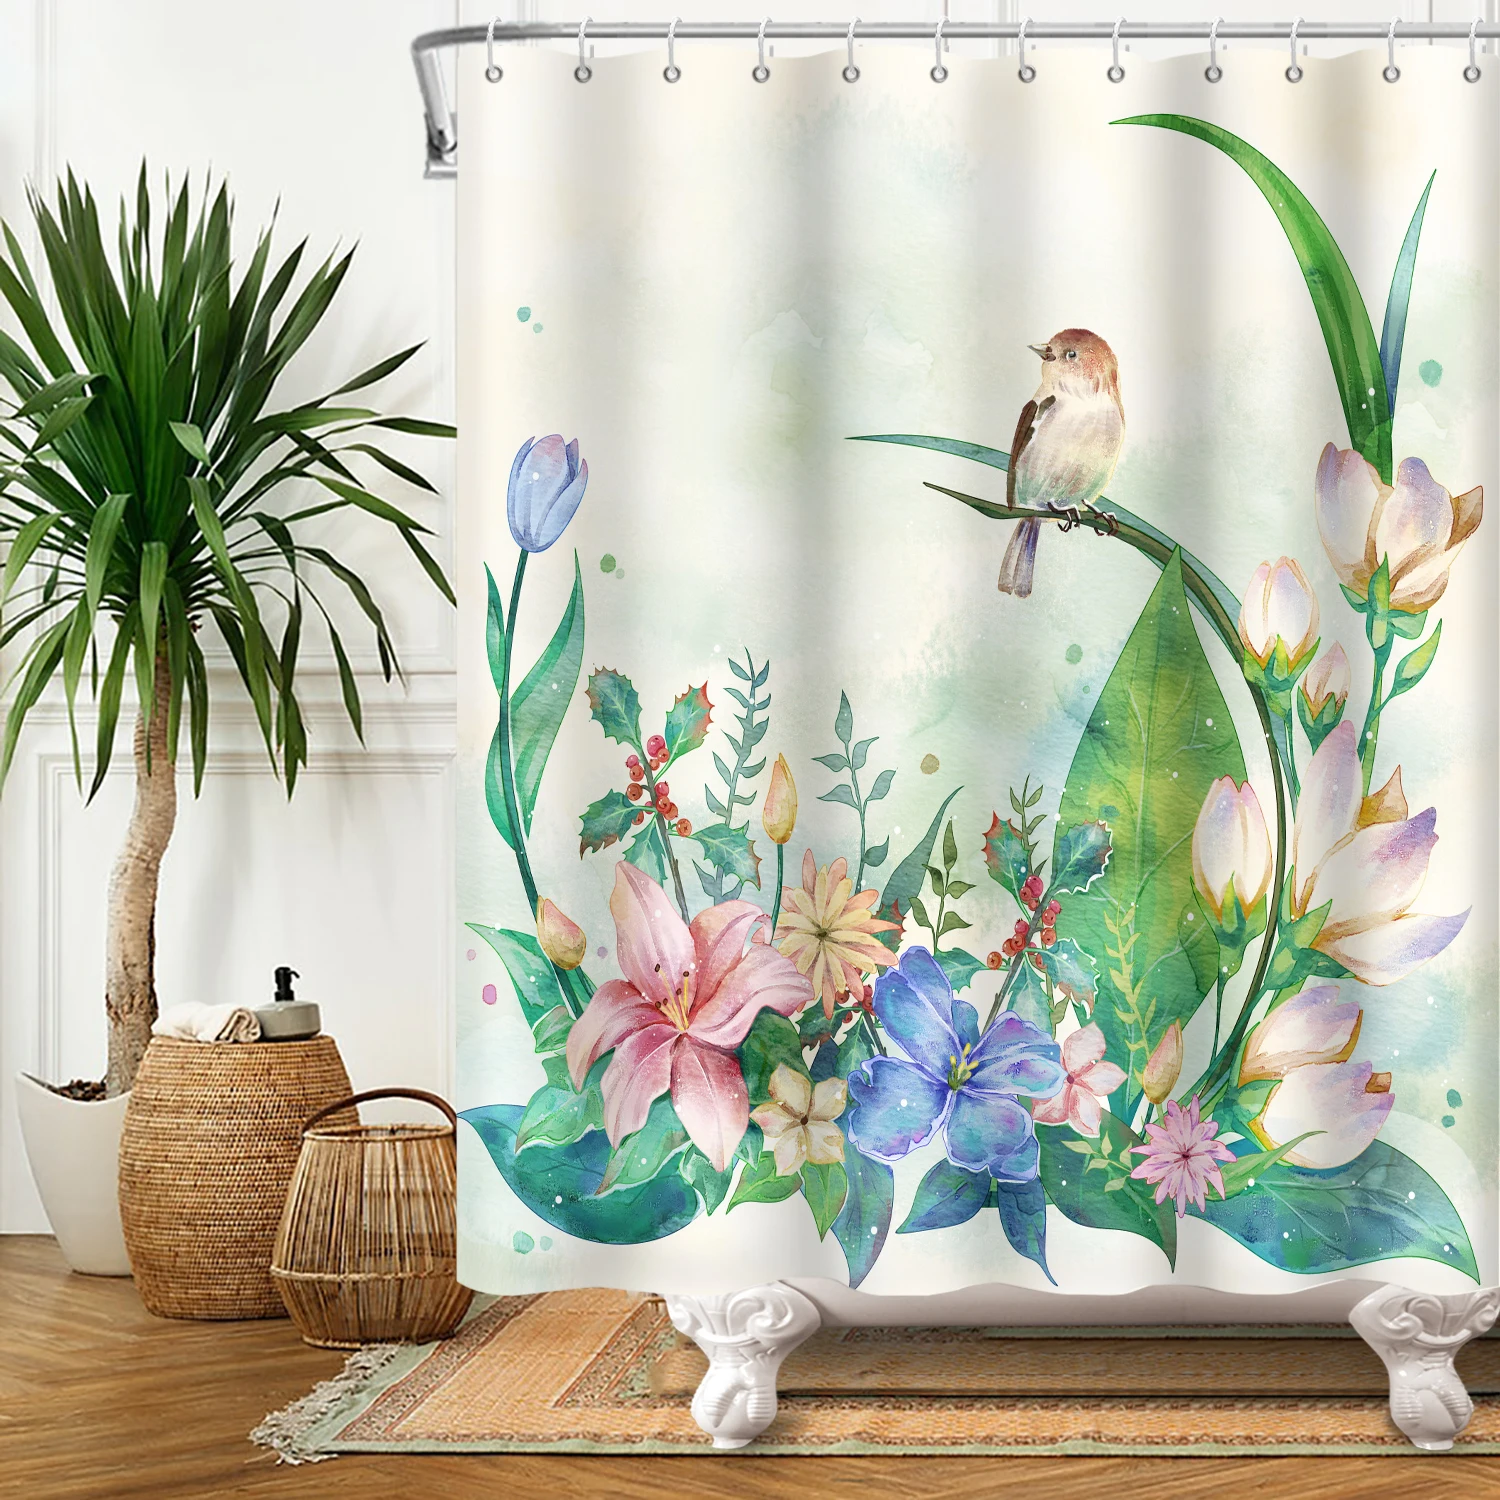 צבעי פרחים ציפור וילון המקלחת לשירותים להגדיר מודרני אביב יונק הדבש פרח הביתה אמבטיה אמבטיה עיצוב עם ווים